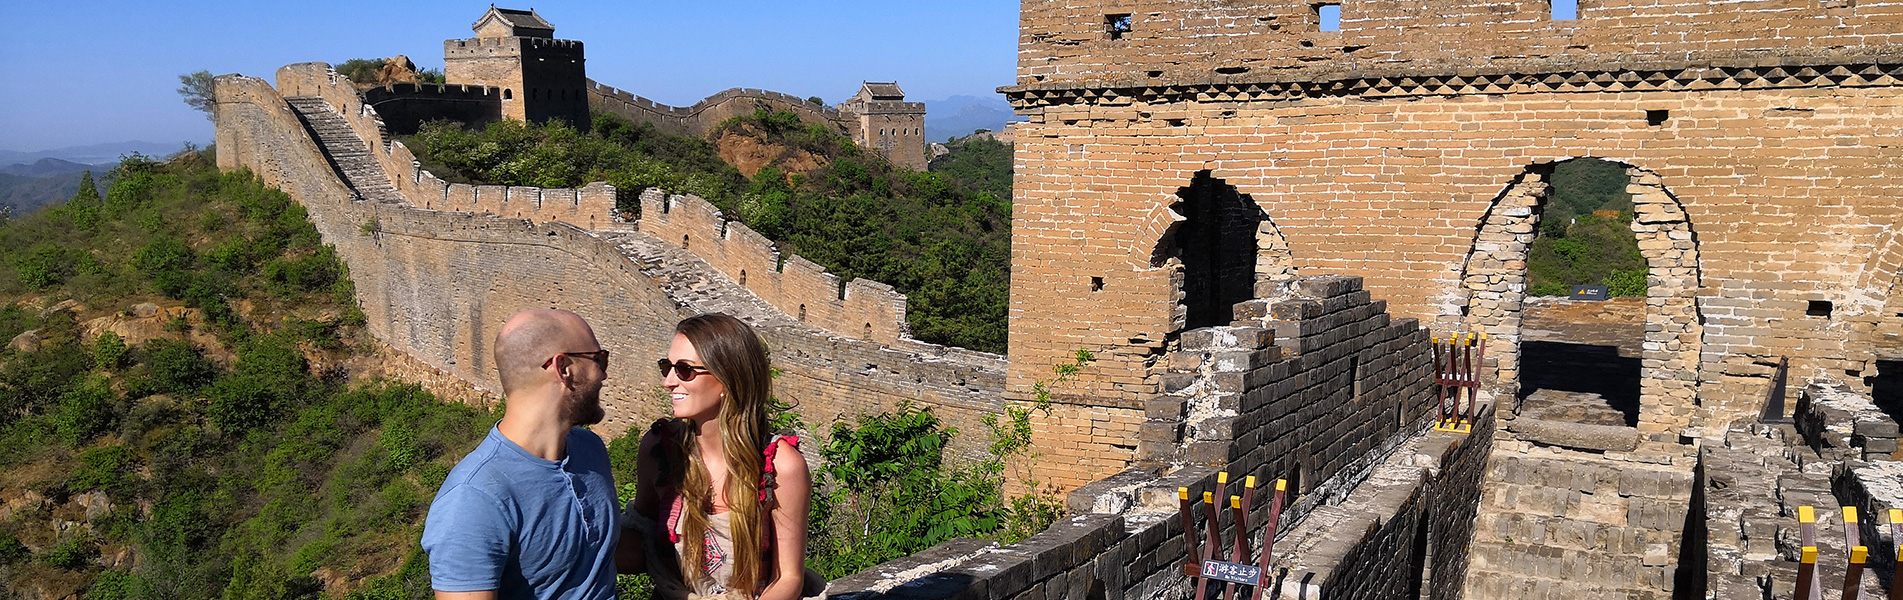 Tour Cina: tour privati e su misura, creati da esperti locali 